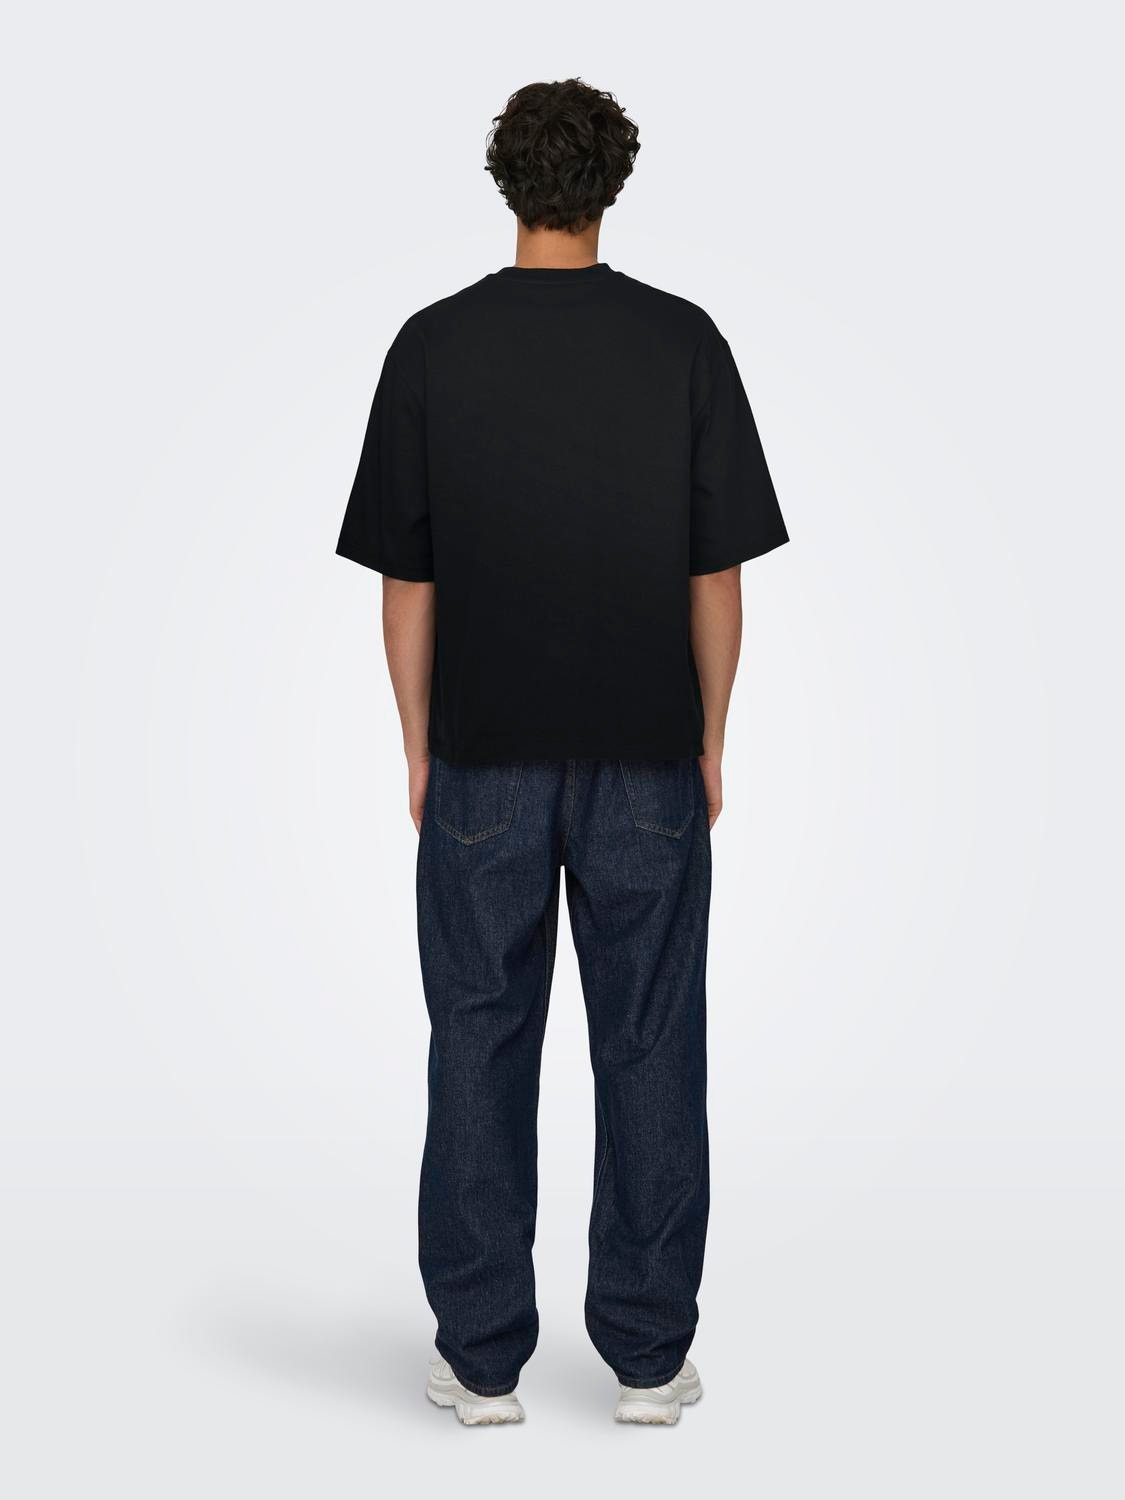 ONLY & SONS Camisetas Corte oversized Cuello redondo -Black - 22027787